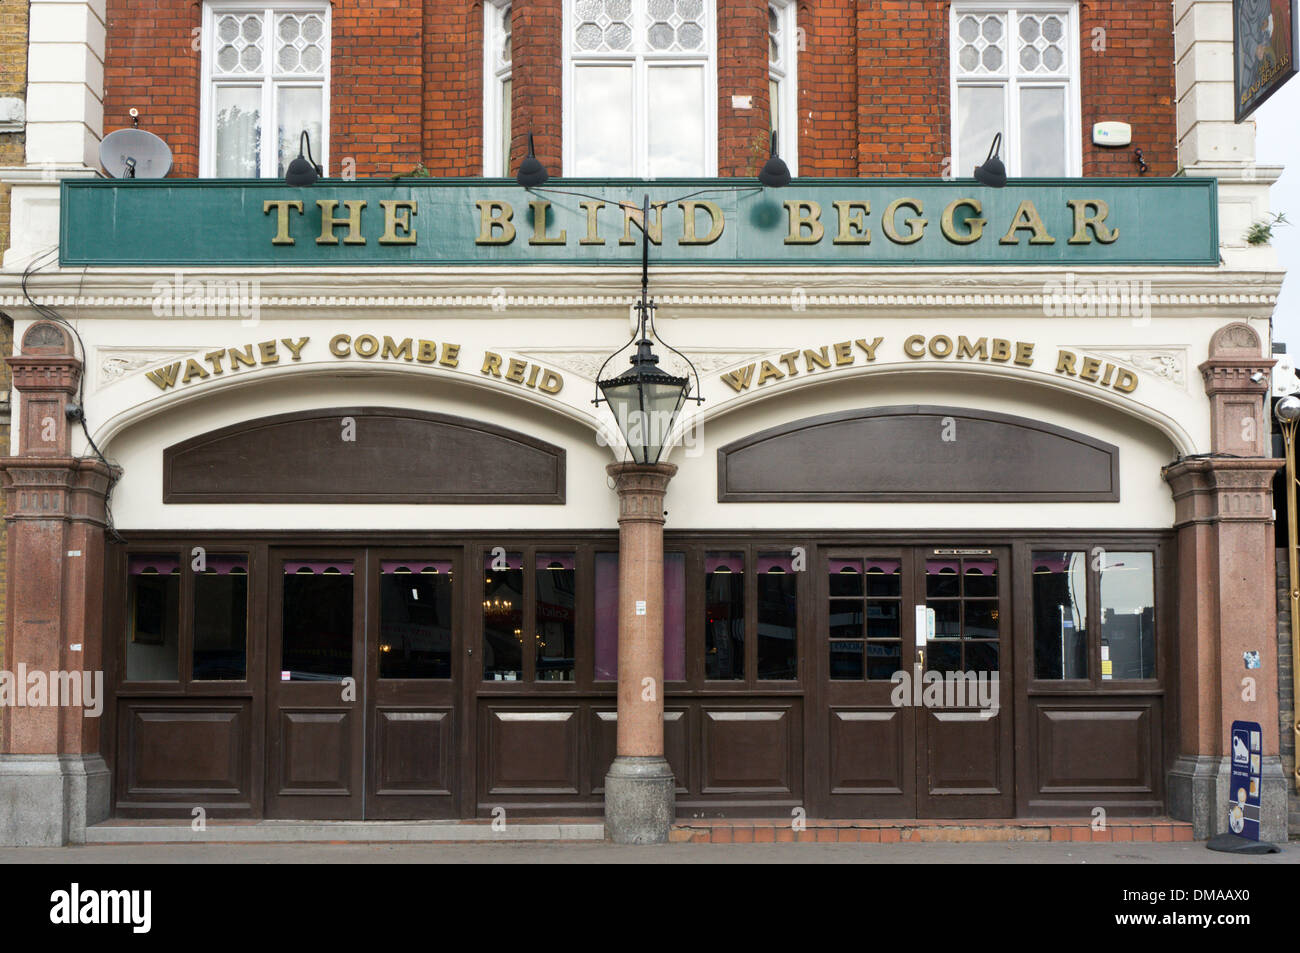 Der blinde Bettler Pub in Whitechapel Road in London. Stockfoto